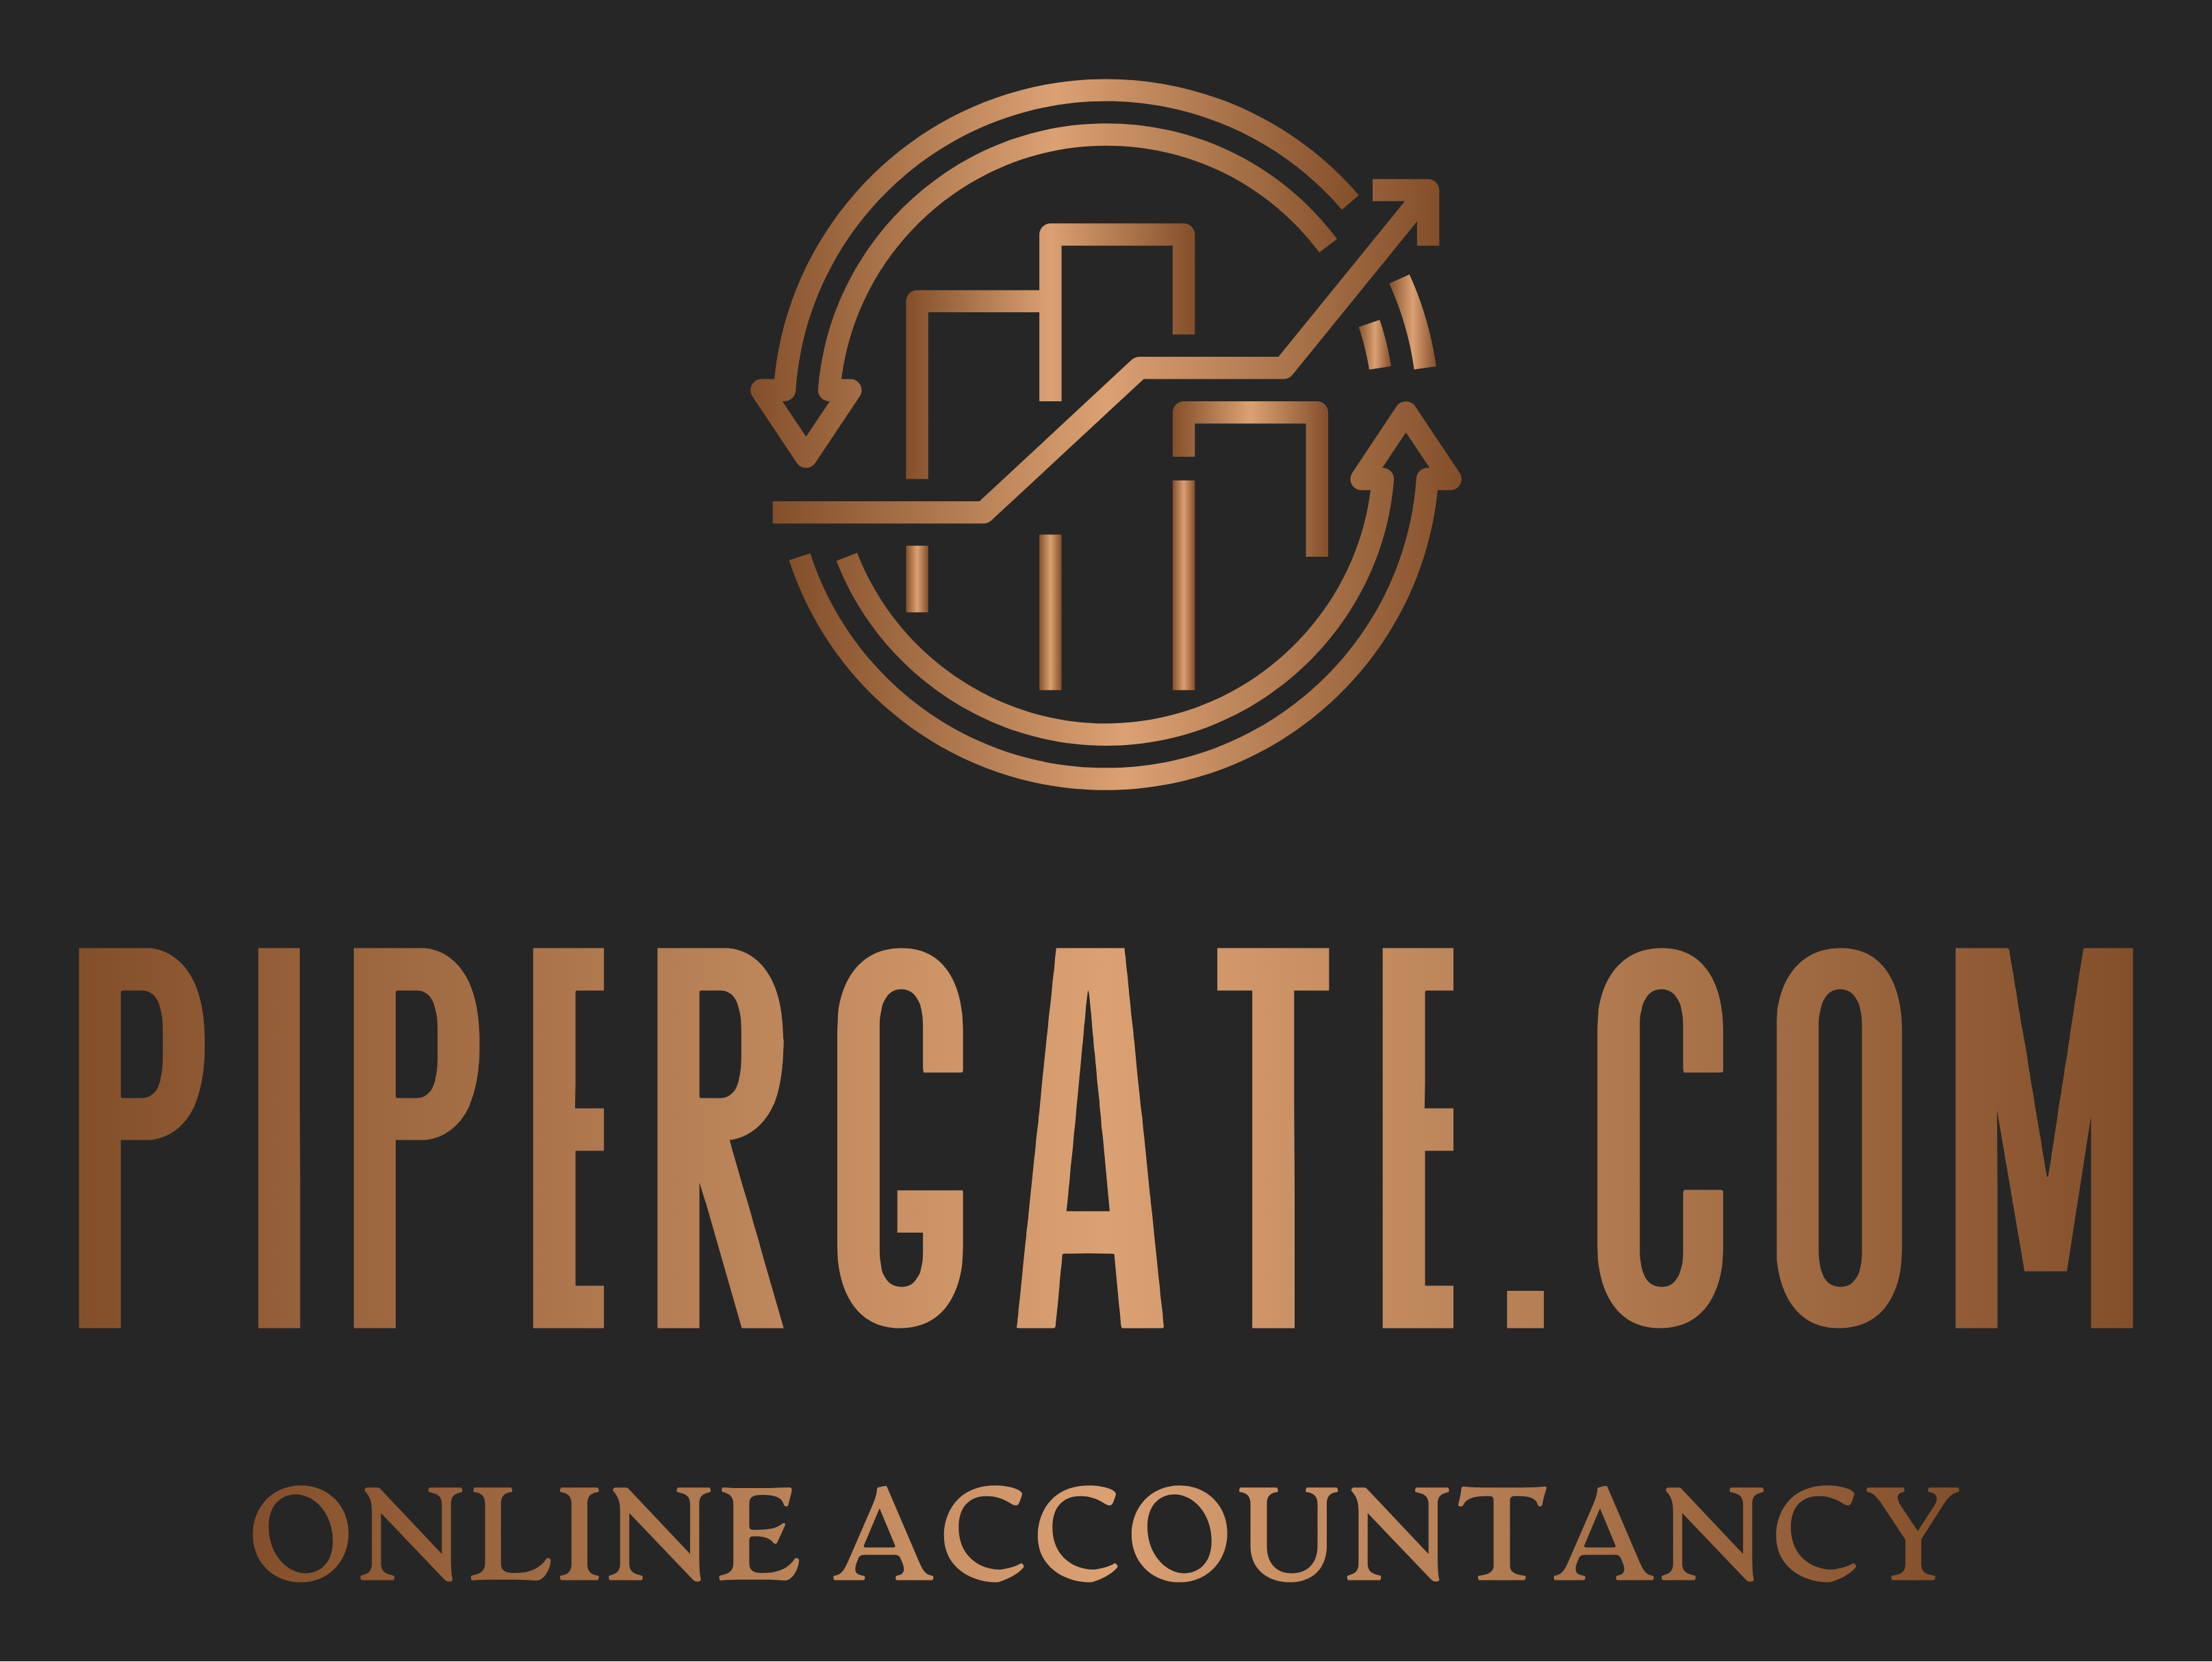 Pipergate.com logo